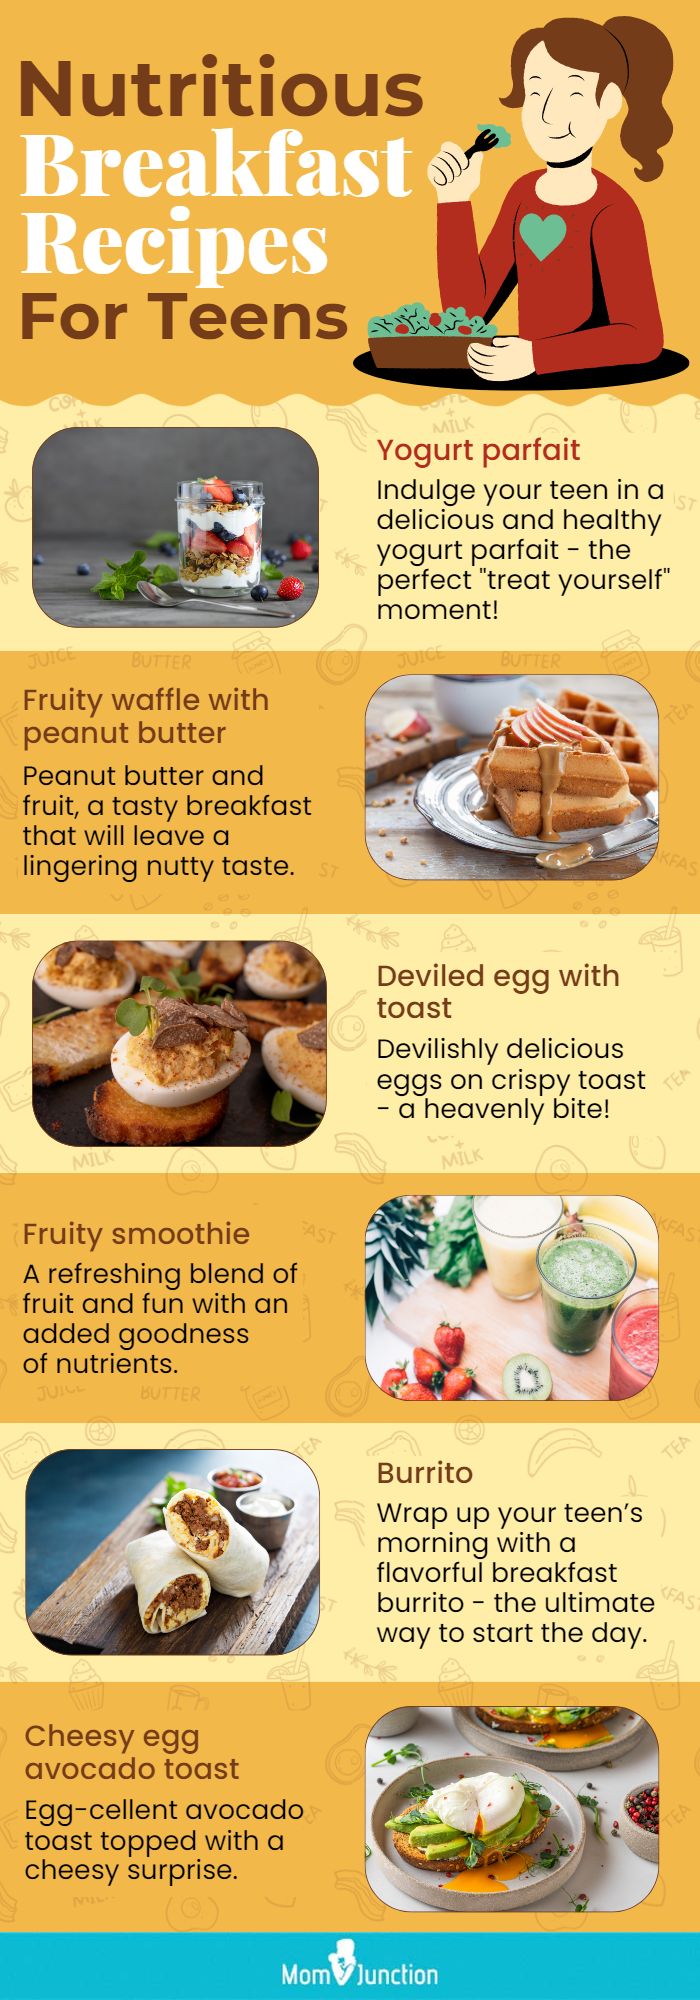 青少年早餐食谱营养概况(信息图)